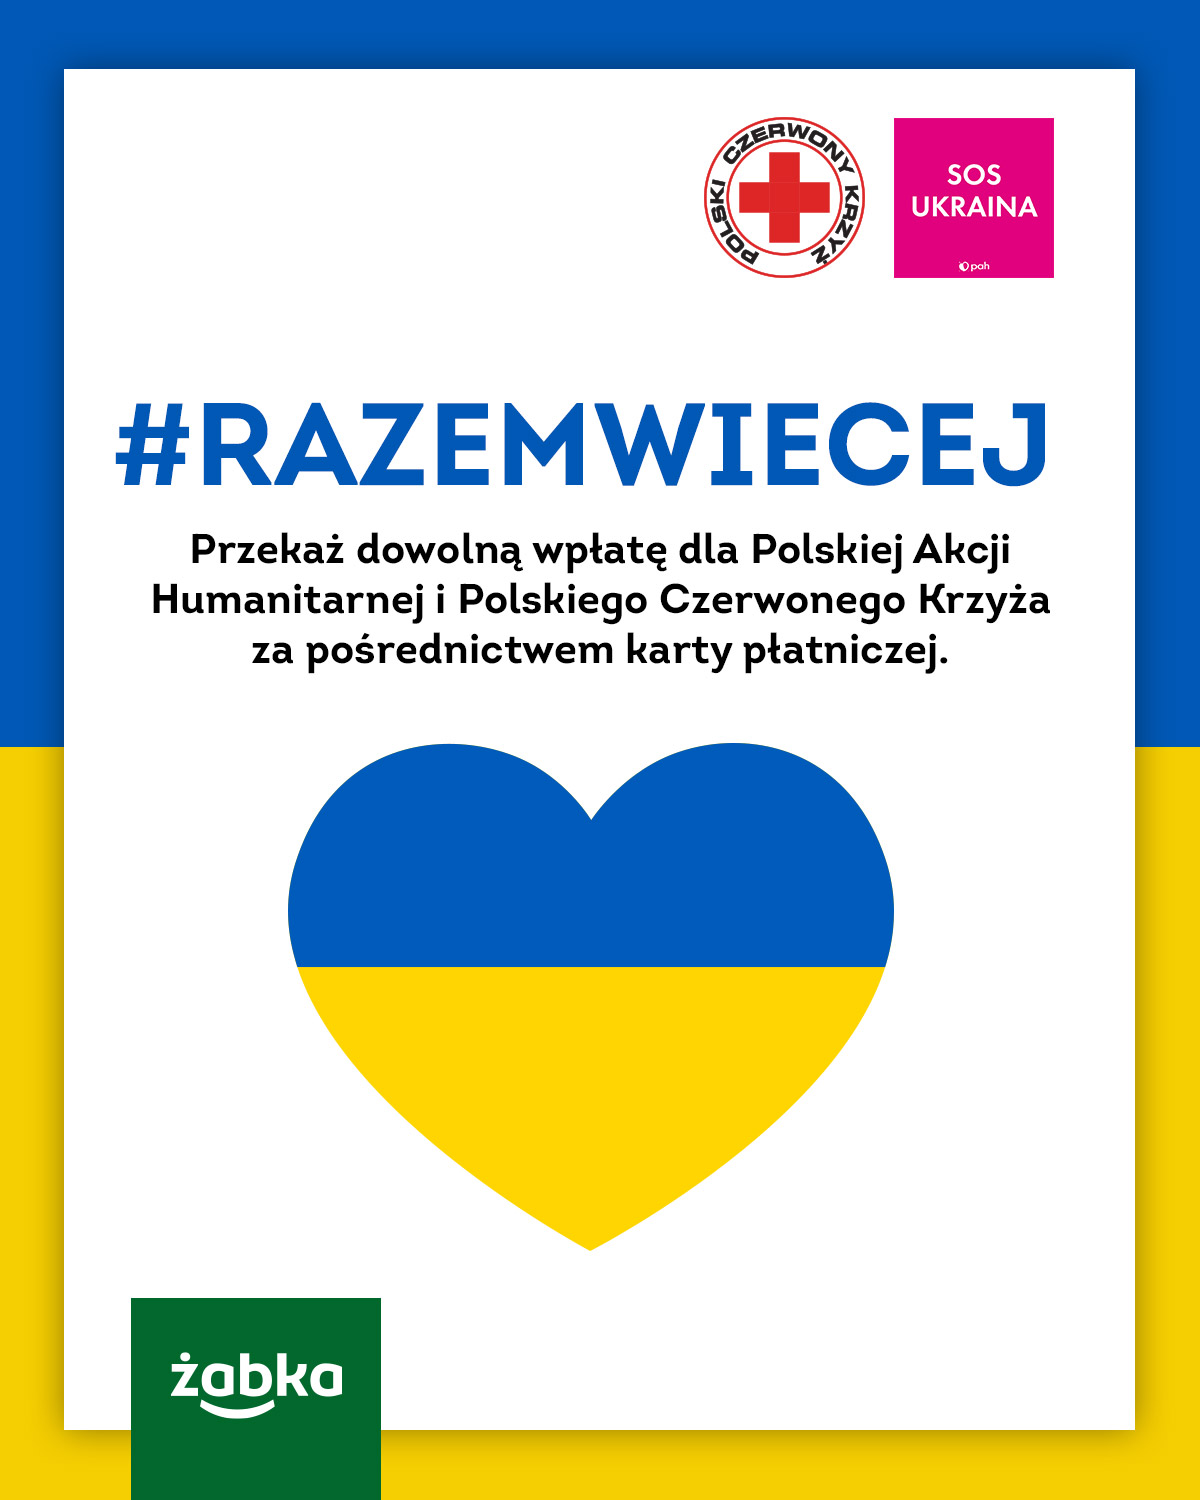 Żabka organizuje zbiórkę na rzecz Polskiej Akcji Humanitarnej oraz Polskiego Czerwonego Krzyża